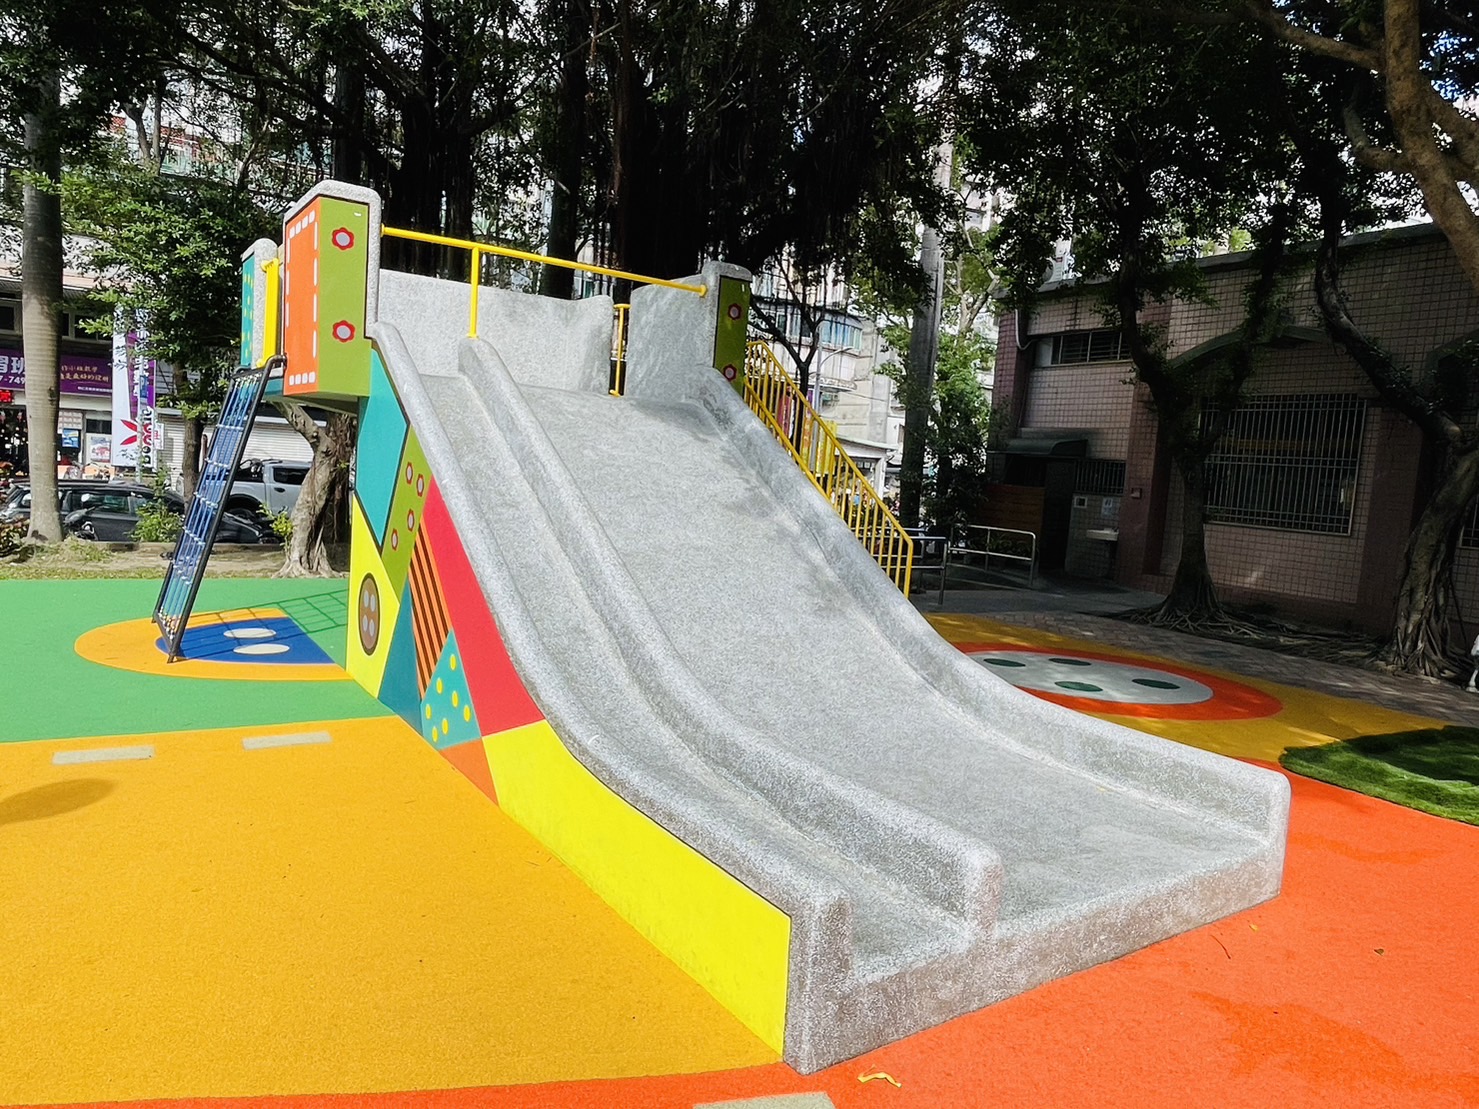 改造後的溜滑梯，外型因增加軟質的色彩彈性地墊比以前更酷炫.